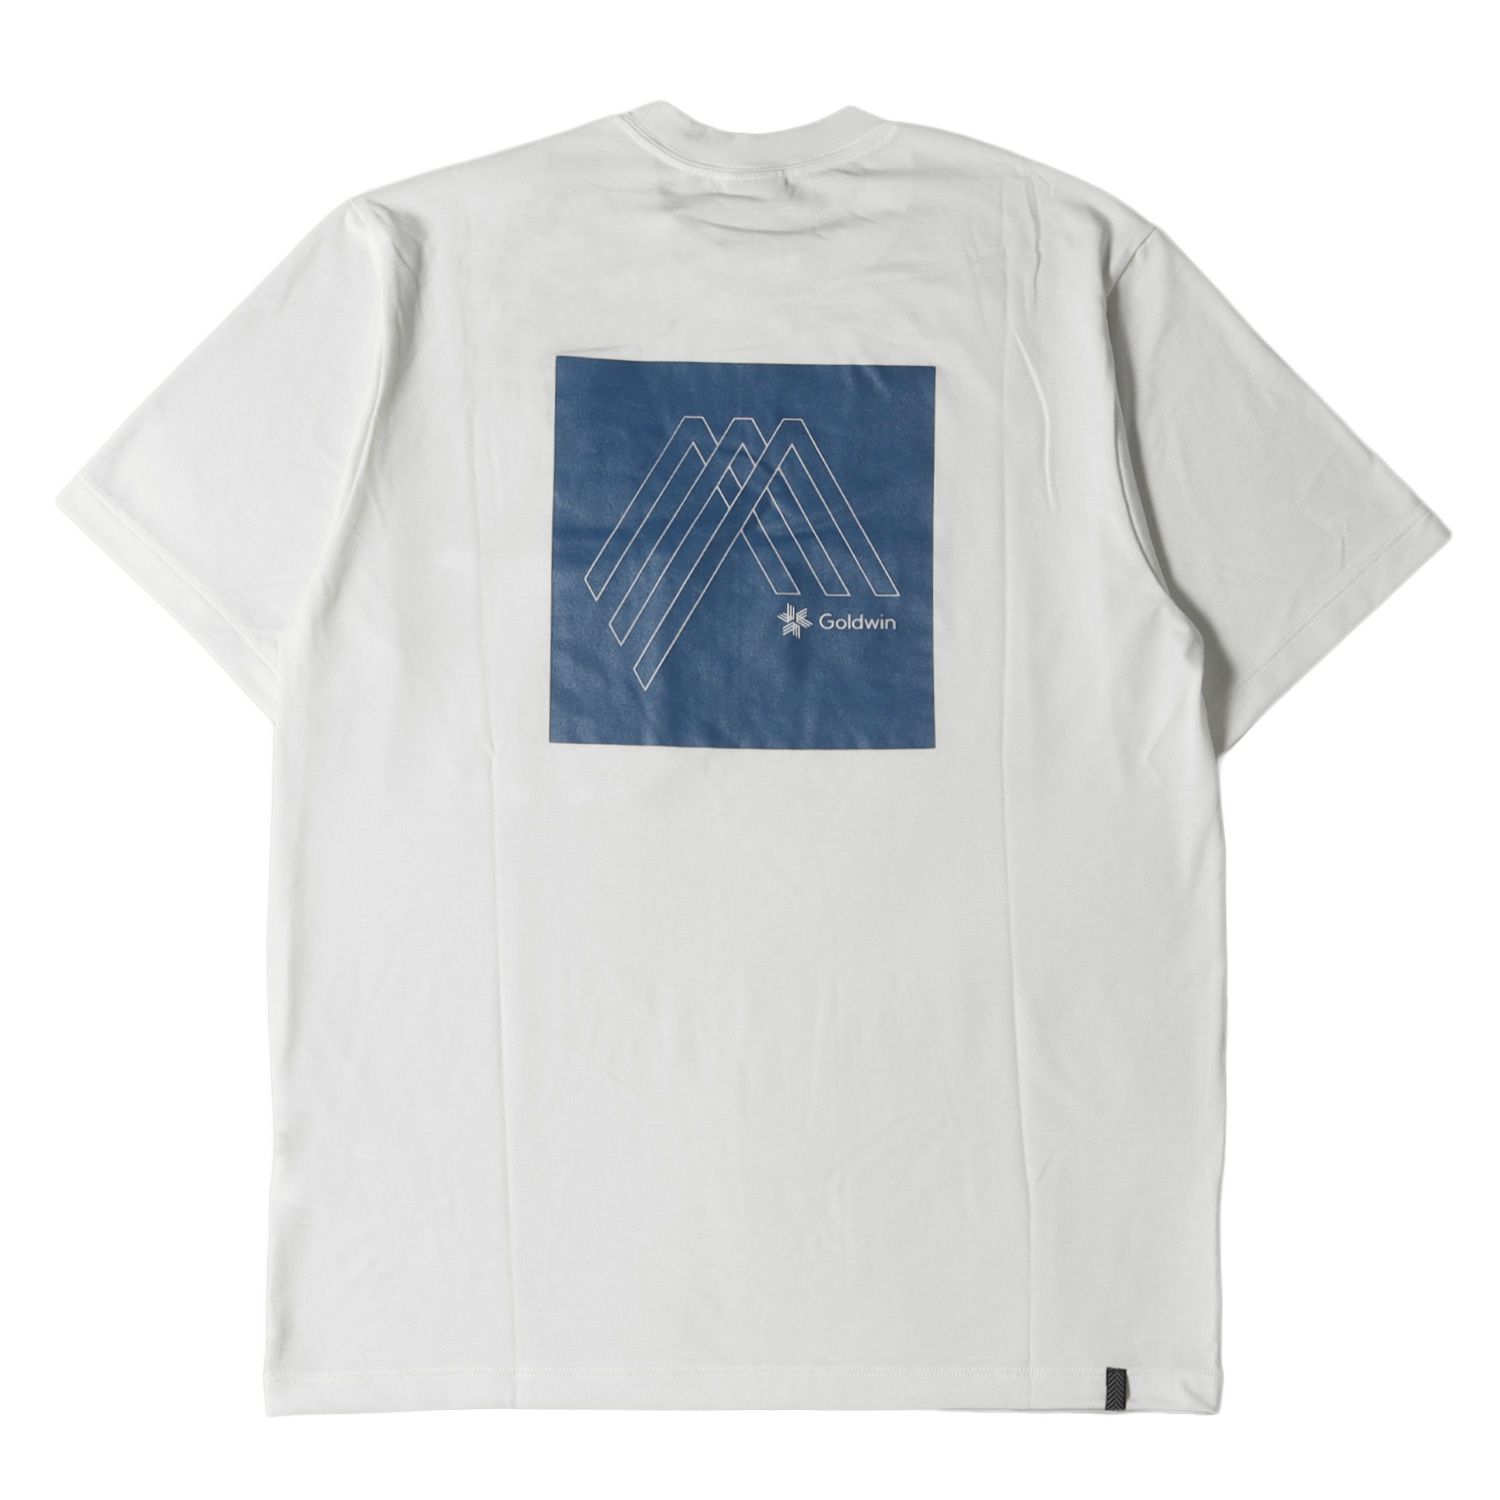 GOLDWIN ゴールドウイン Tシャツ サイズ:M 21SS グラフィック ストレッチ クルーネック Tシャツ Graphic T-shirt GM60110P ホワイト 白 トップス カットソー 半袖 【メンズ】